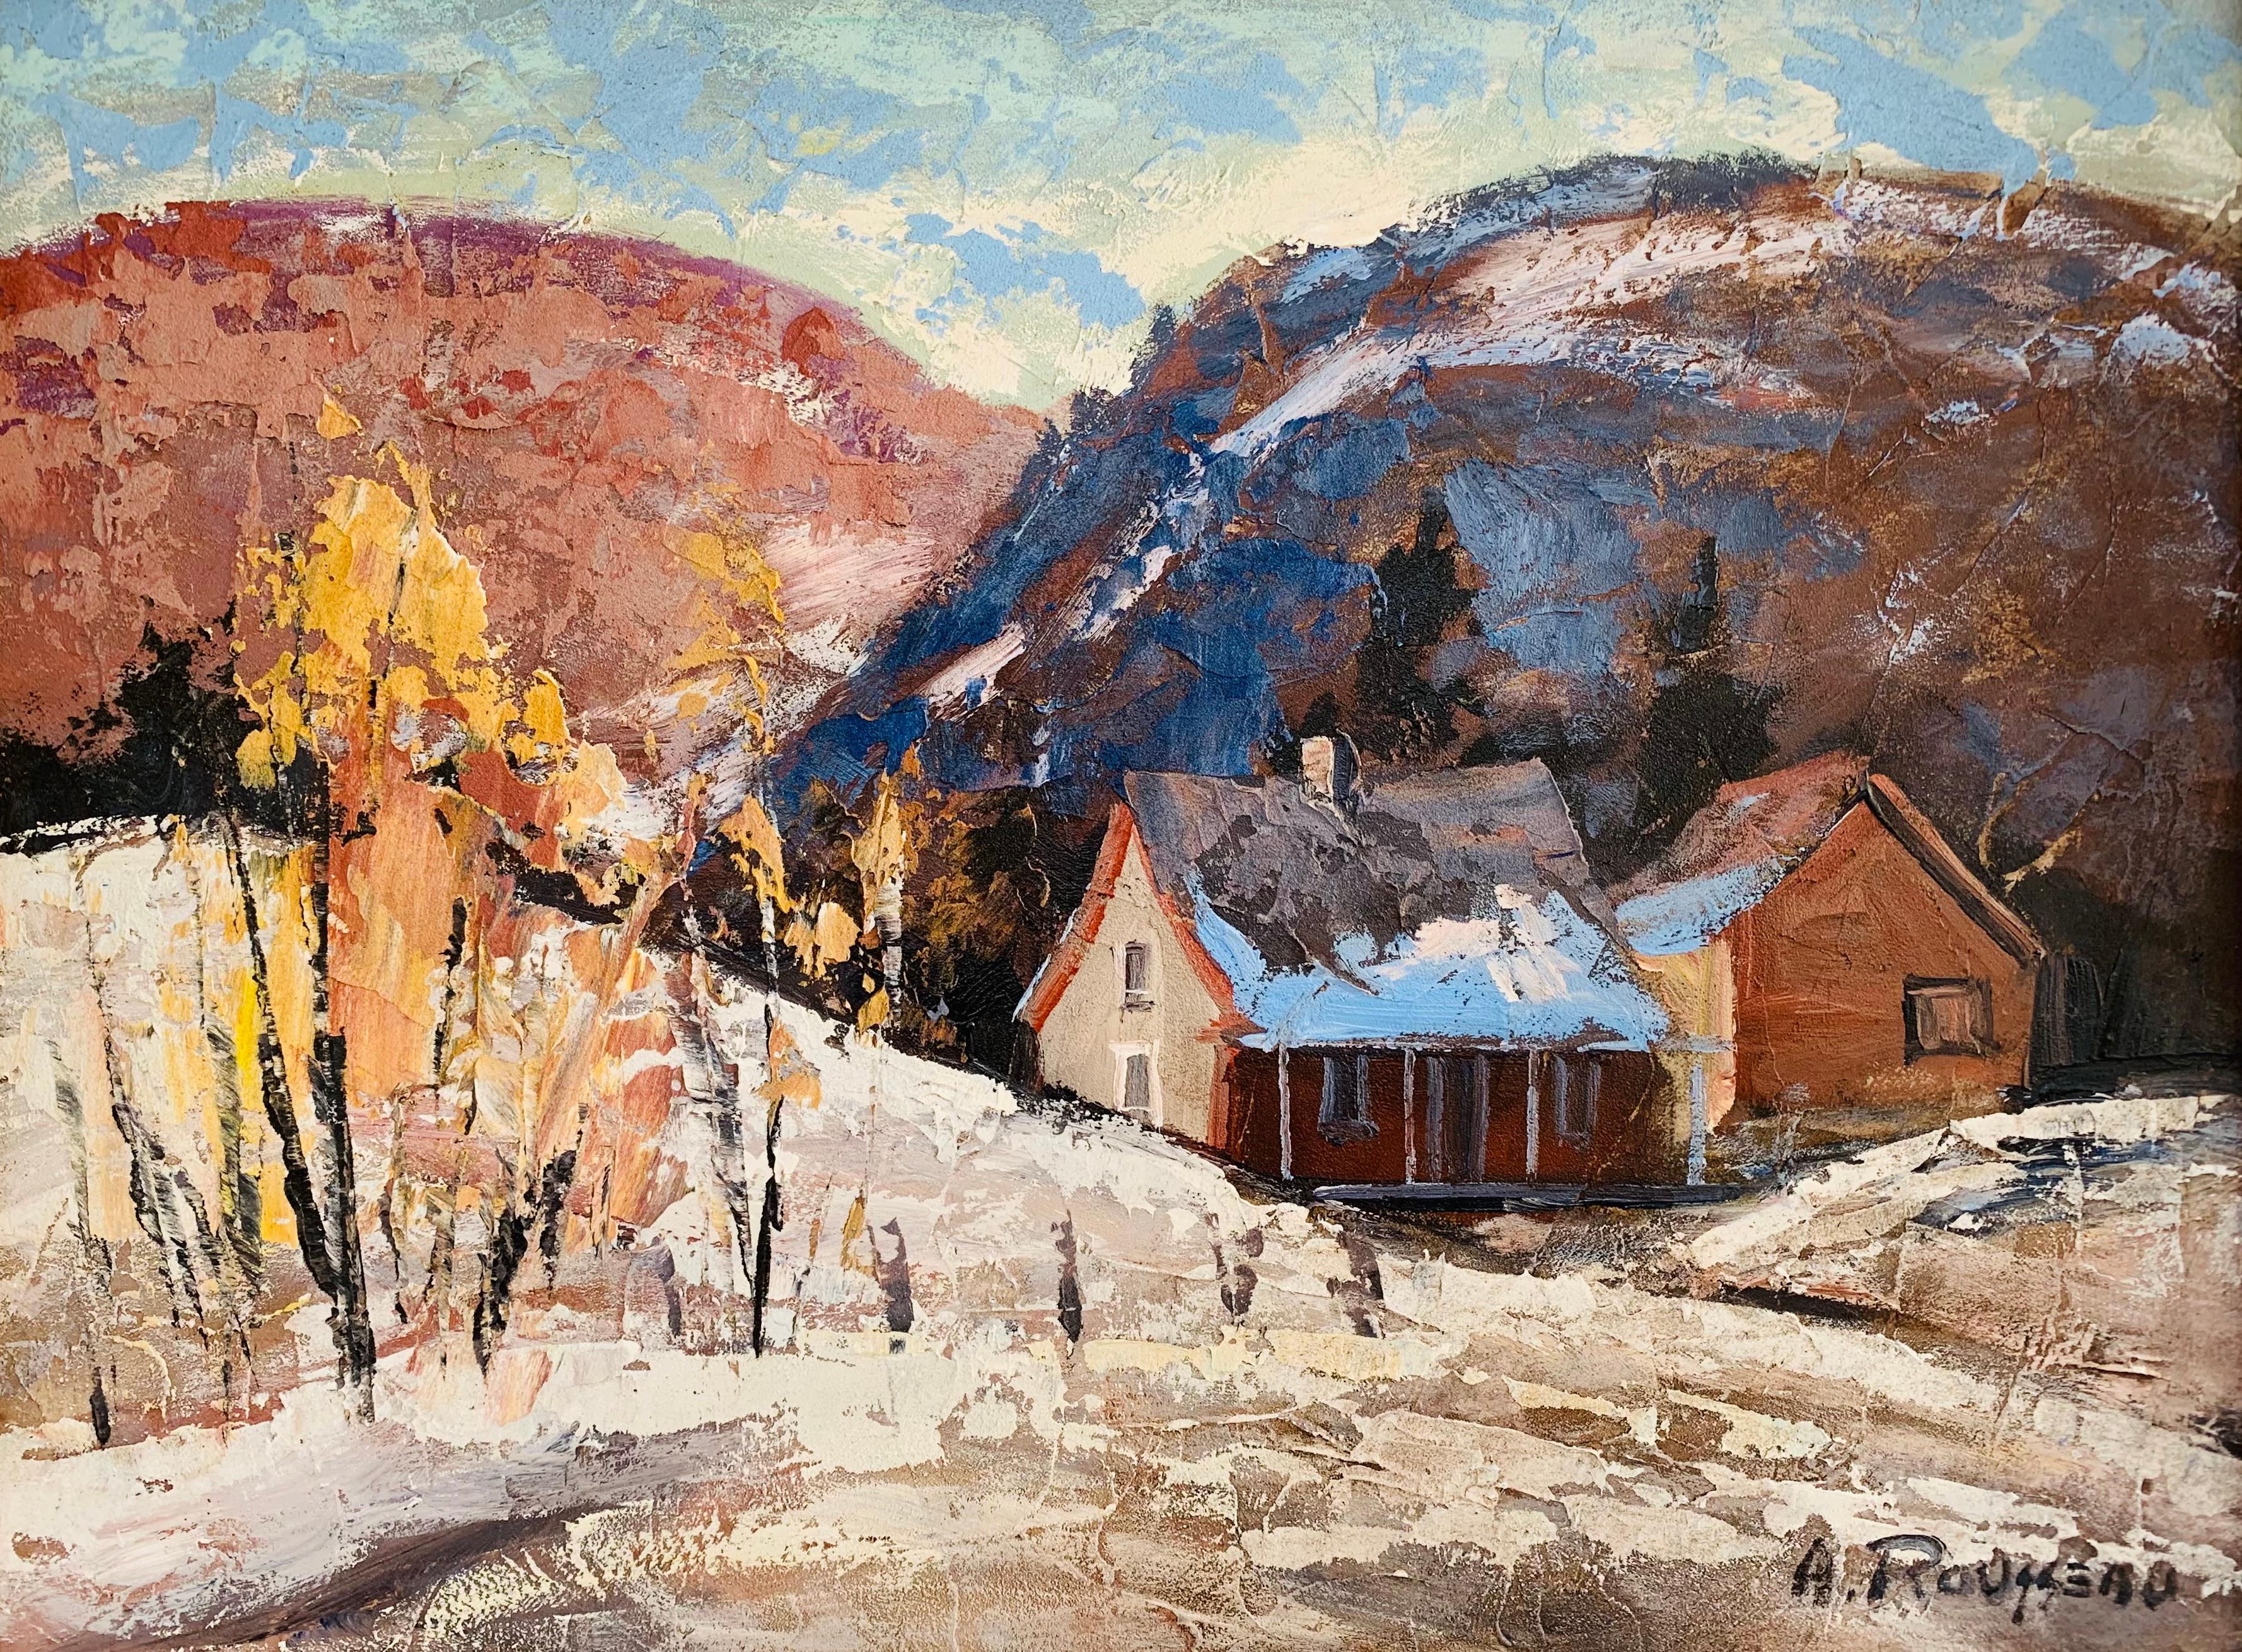 Landscape Painting Albert Rousseau - Saint-Tite-des-Caps, Québec